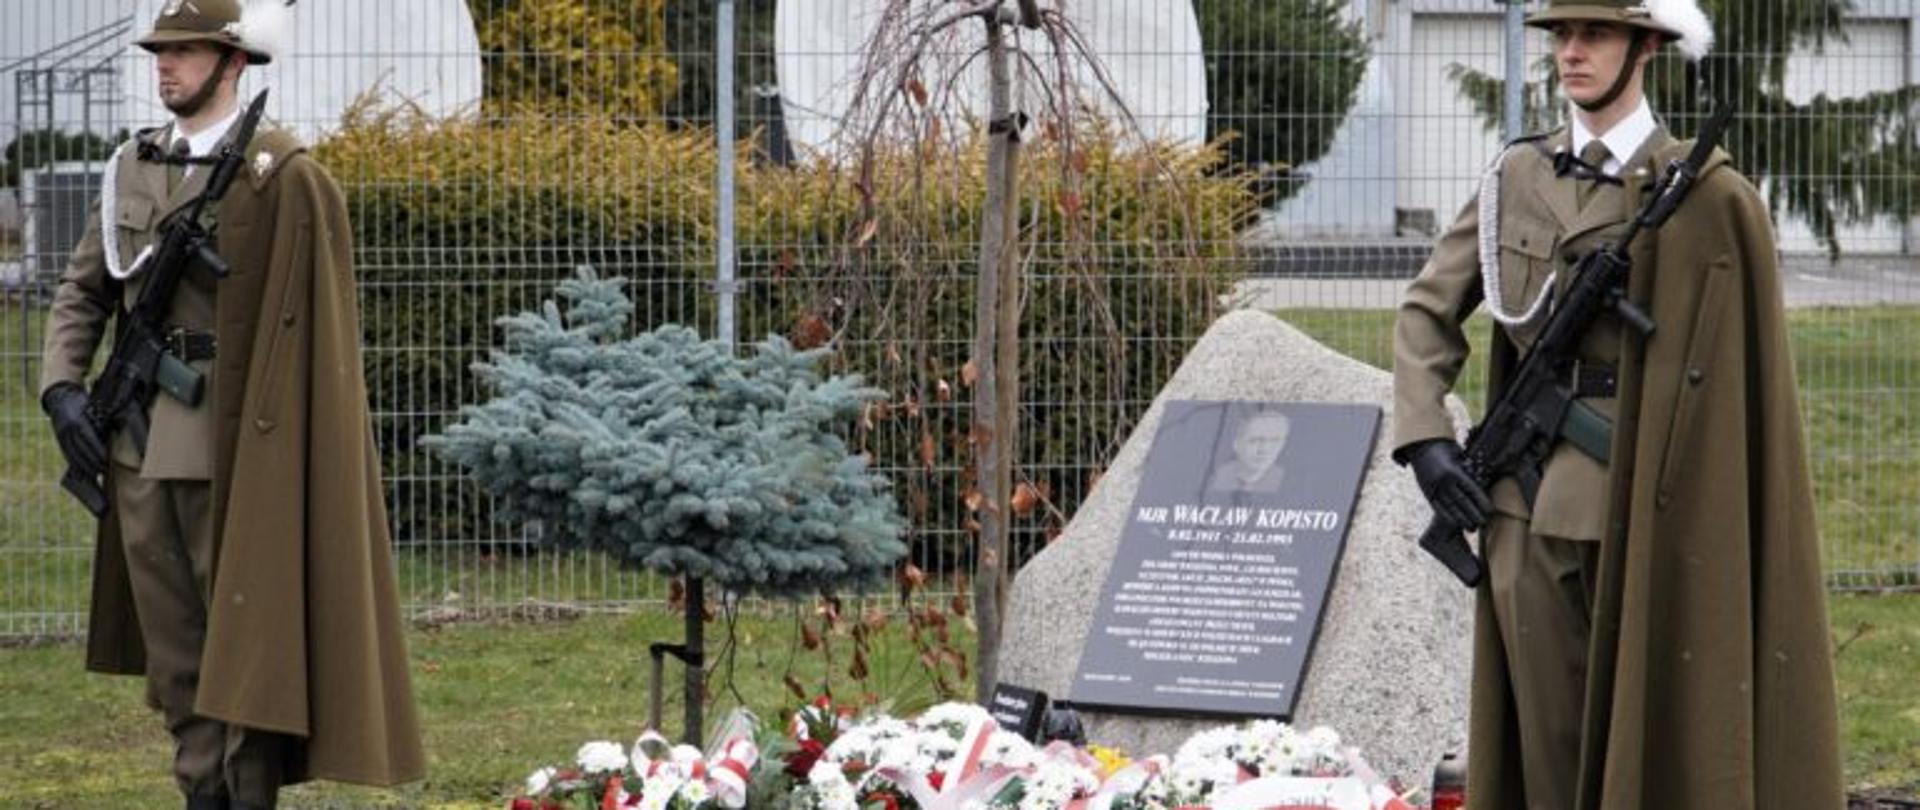 Żołnierze stojący obok tablicy upamiętniającej śp. mjr. Wacława Kopisto. Przed tablicą znajdują się wiązanki kwiatów wieńce.